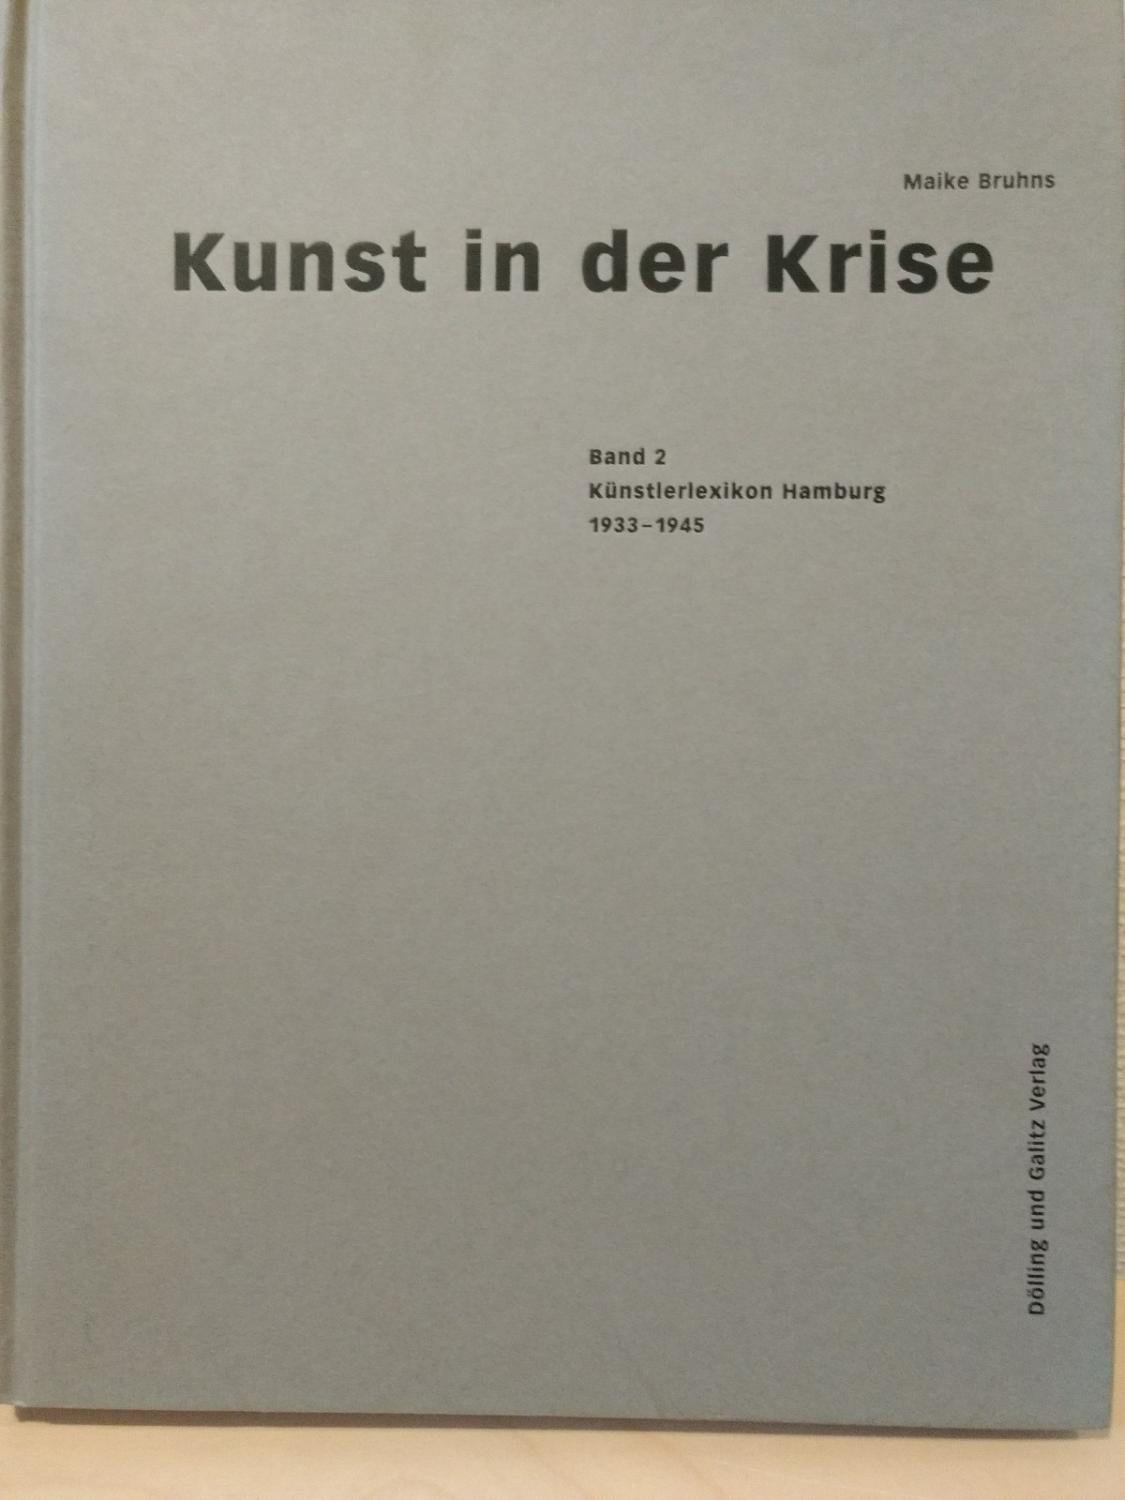 Kunst in der Krise. Band 2: Künstlerlexikon Hamburg 1933-1945 verfemt, verfolgt - verschollen, vergessen